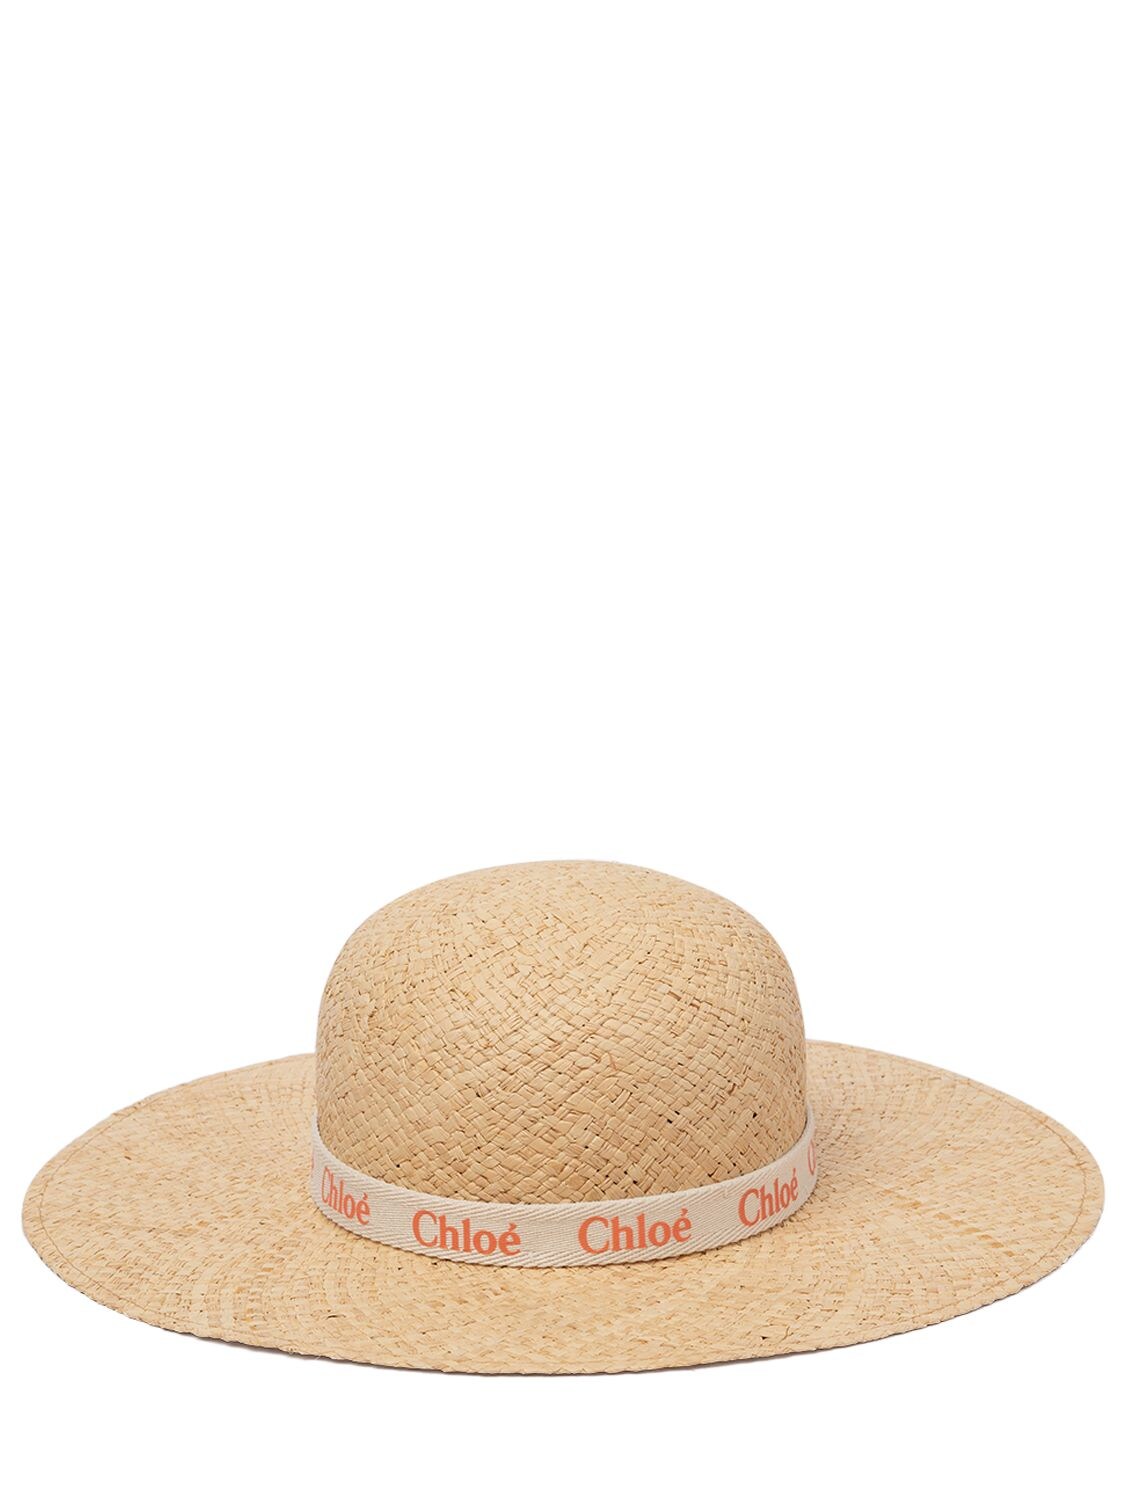 Chloé Kids' Paper Hat W/ Logo In Beige